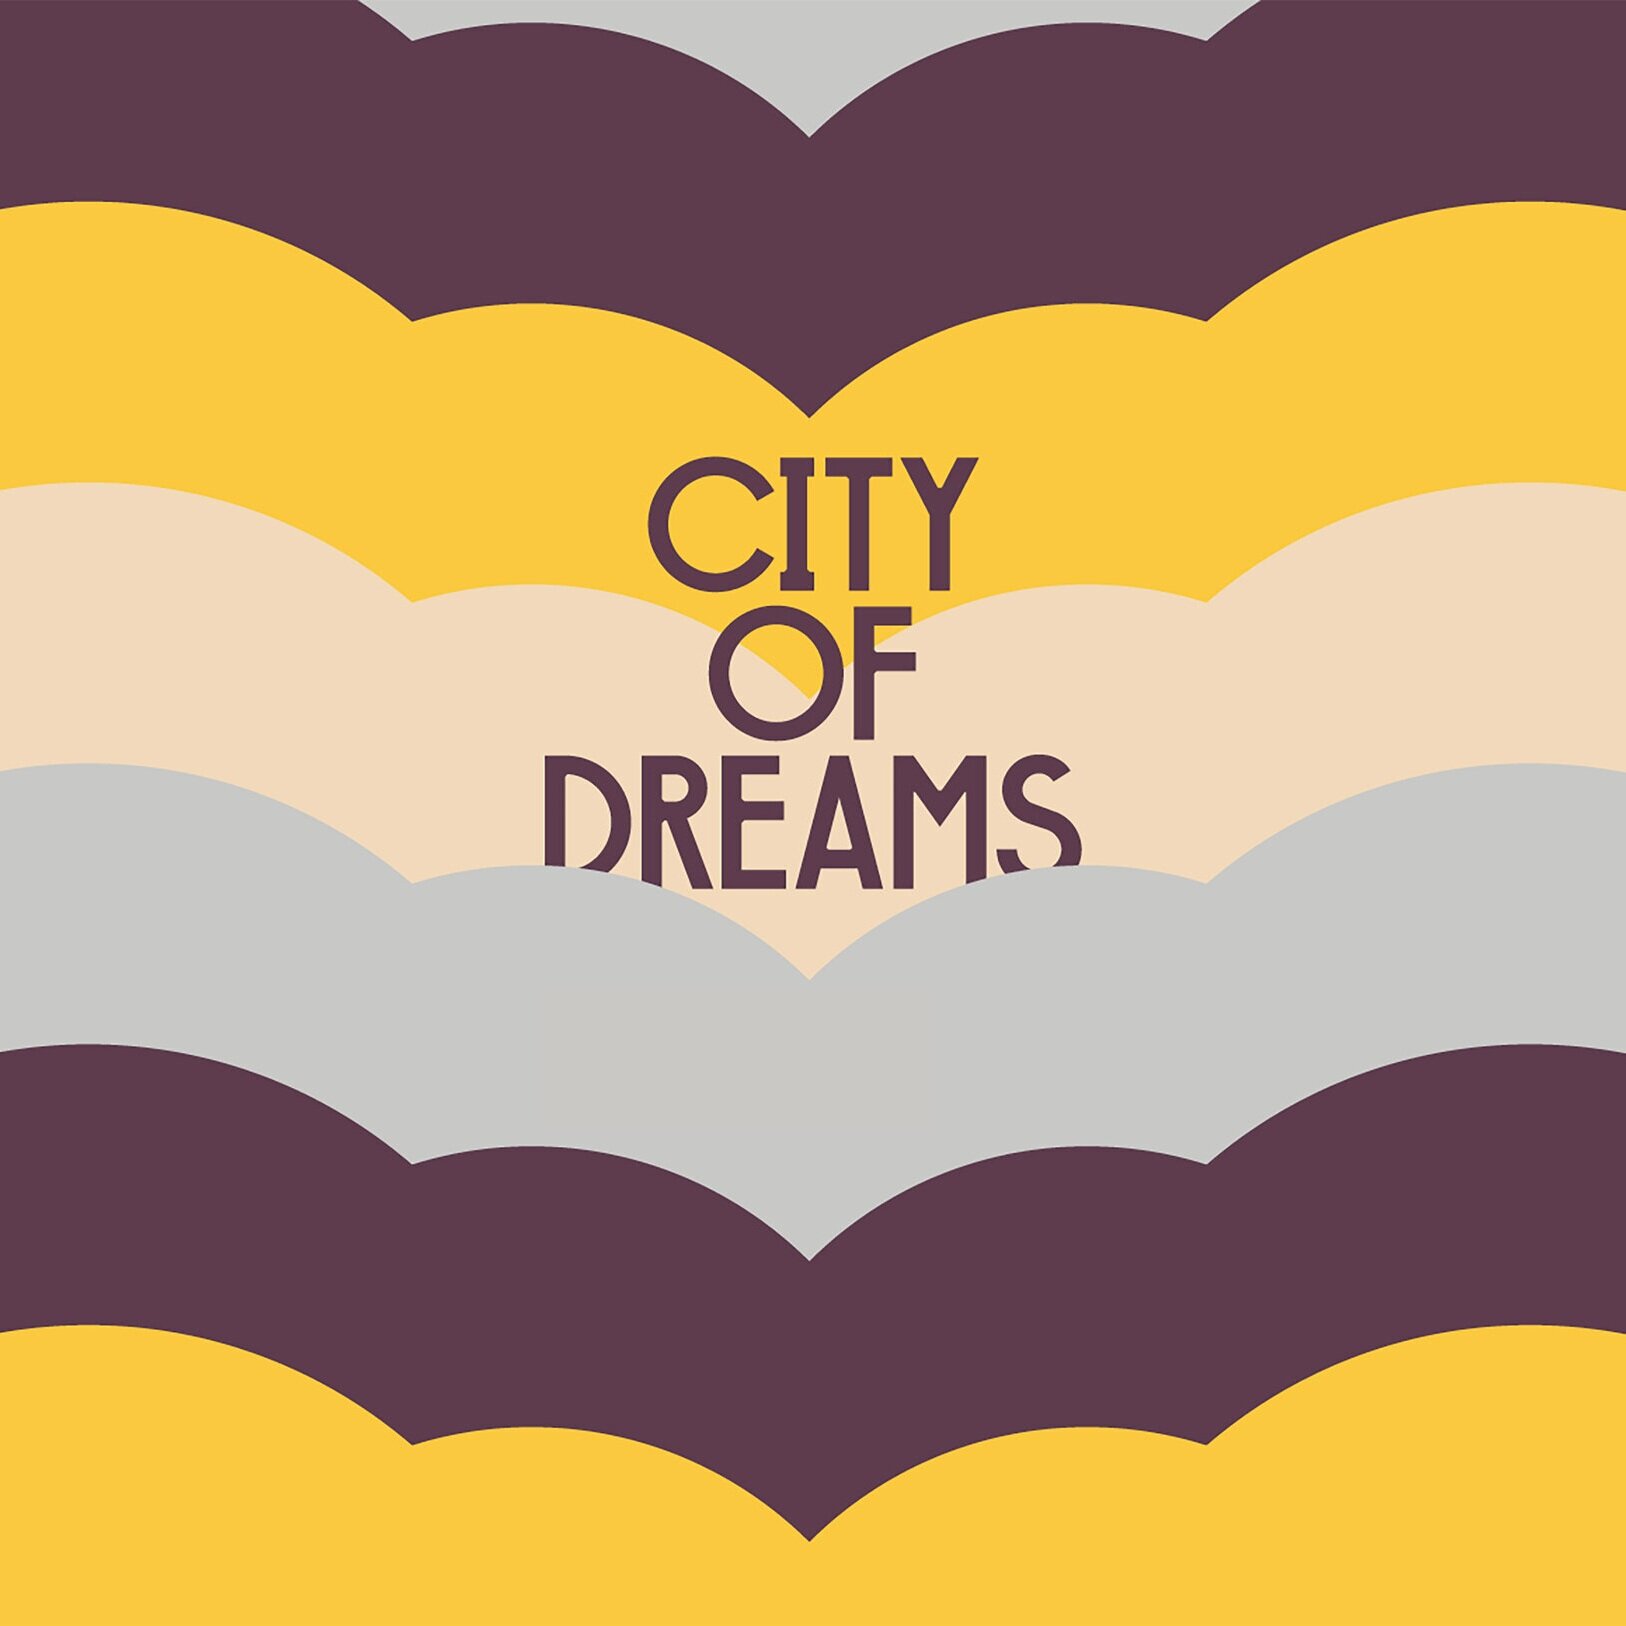 CITY OF DREAMS